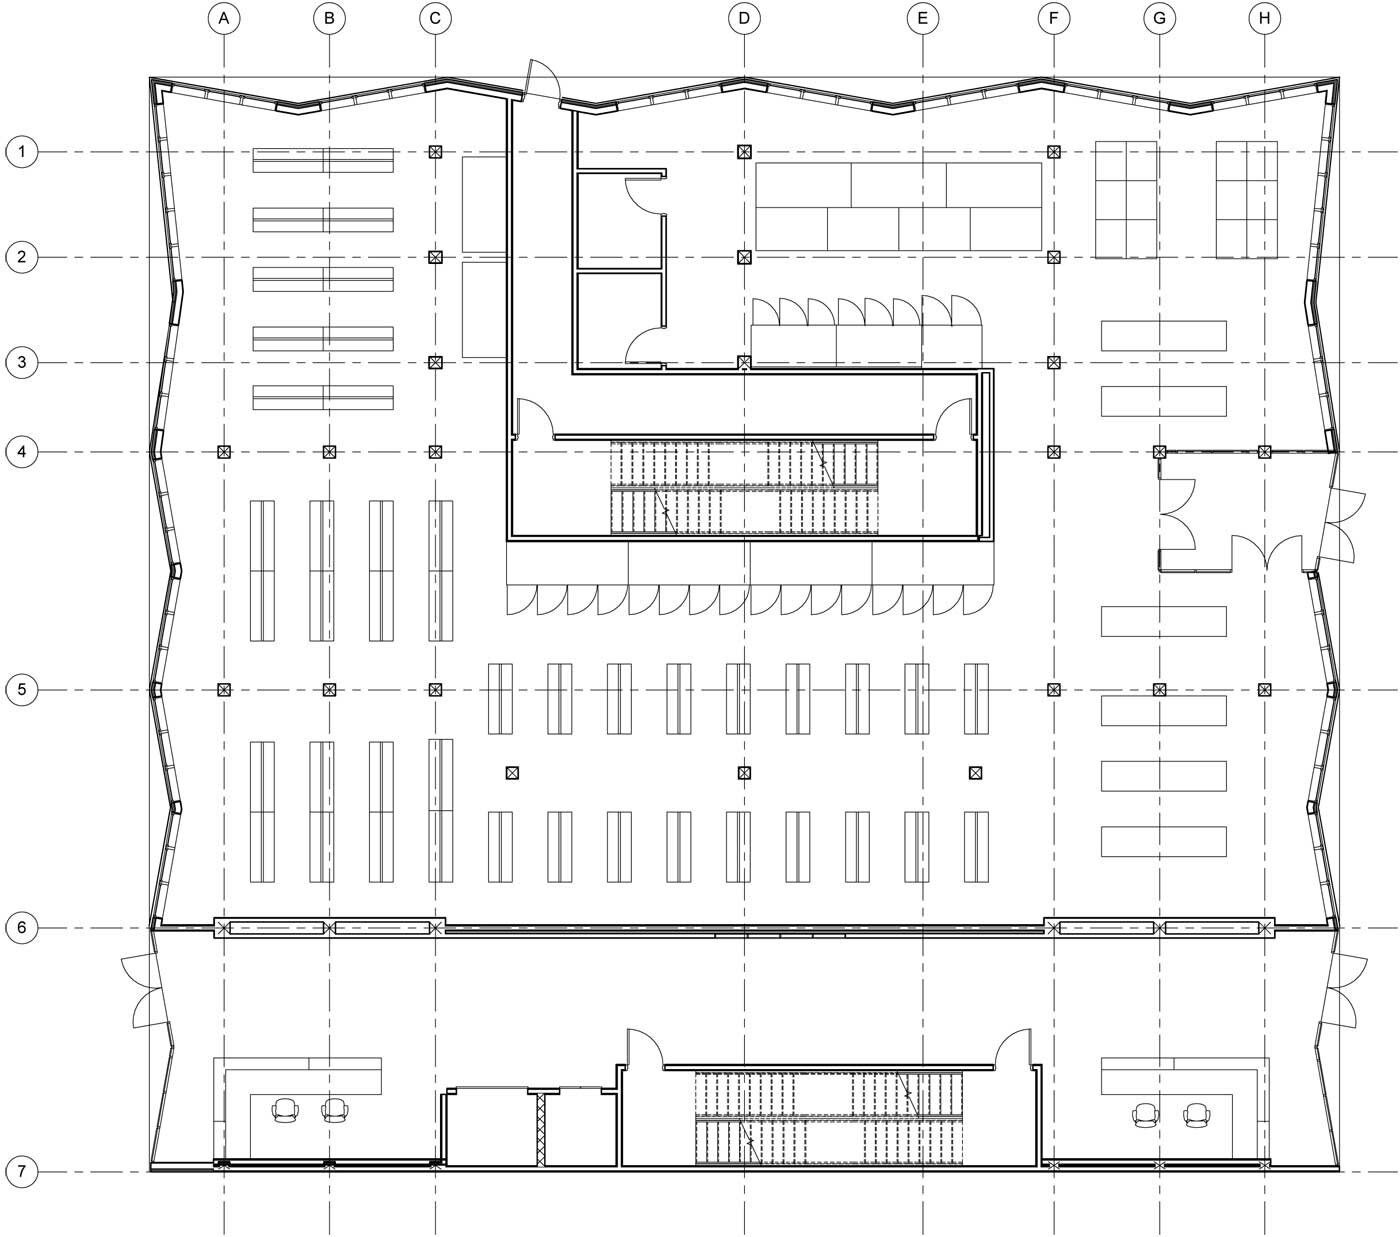 NYC-Micro-Dwellings-1st-Floor-Plan.jpg